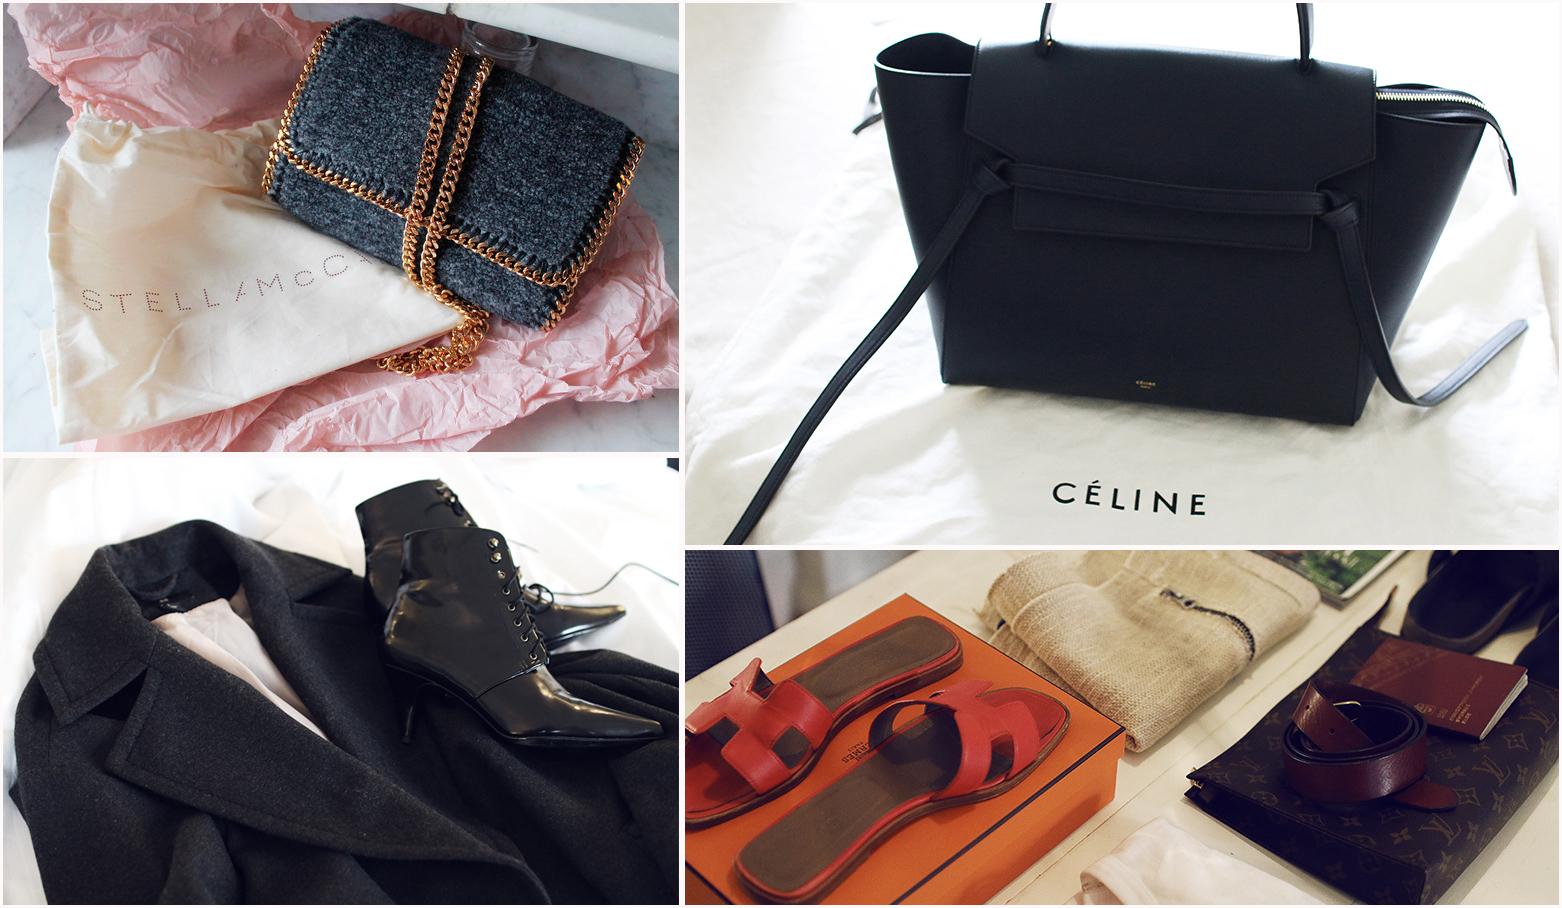 Delar ur väsksamlingen. Här ser vi bland annat dyrgripar från Céline och Stella McCartney, för att inte glömma sommarens mest omnämnda sandaler från Hermès.